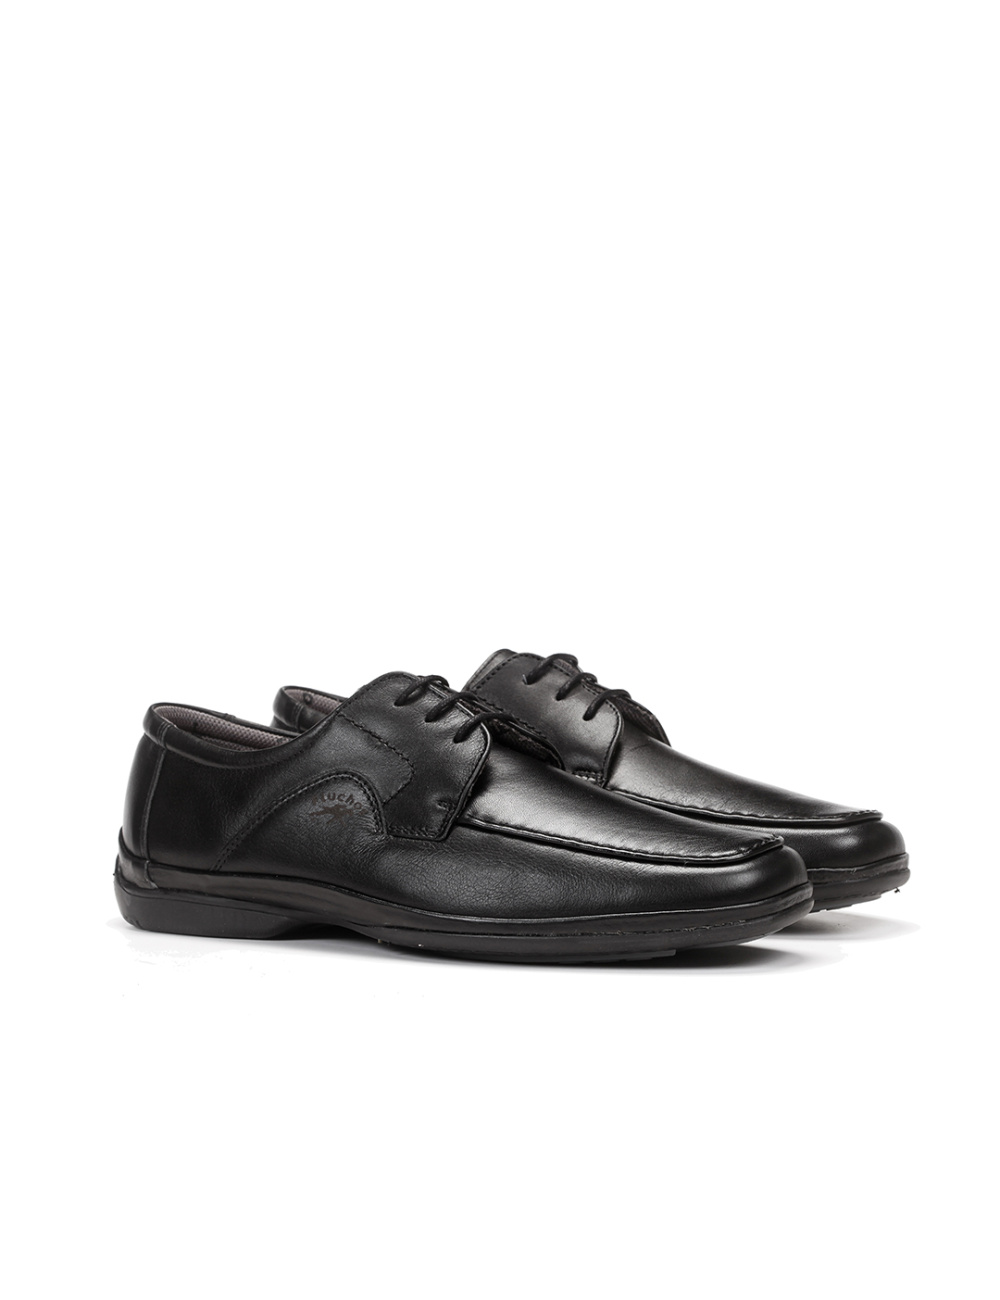 Fluchos - Zapato casual de hombre 7145